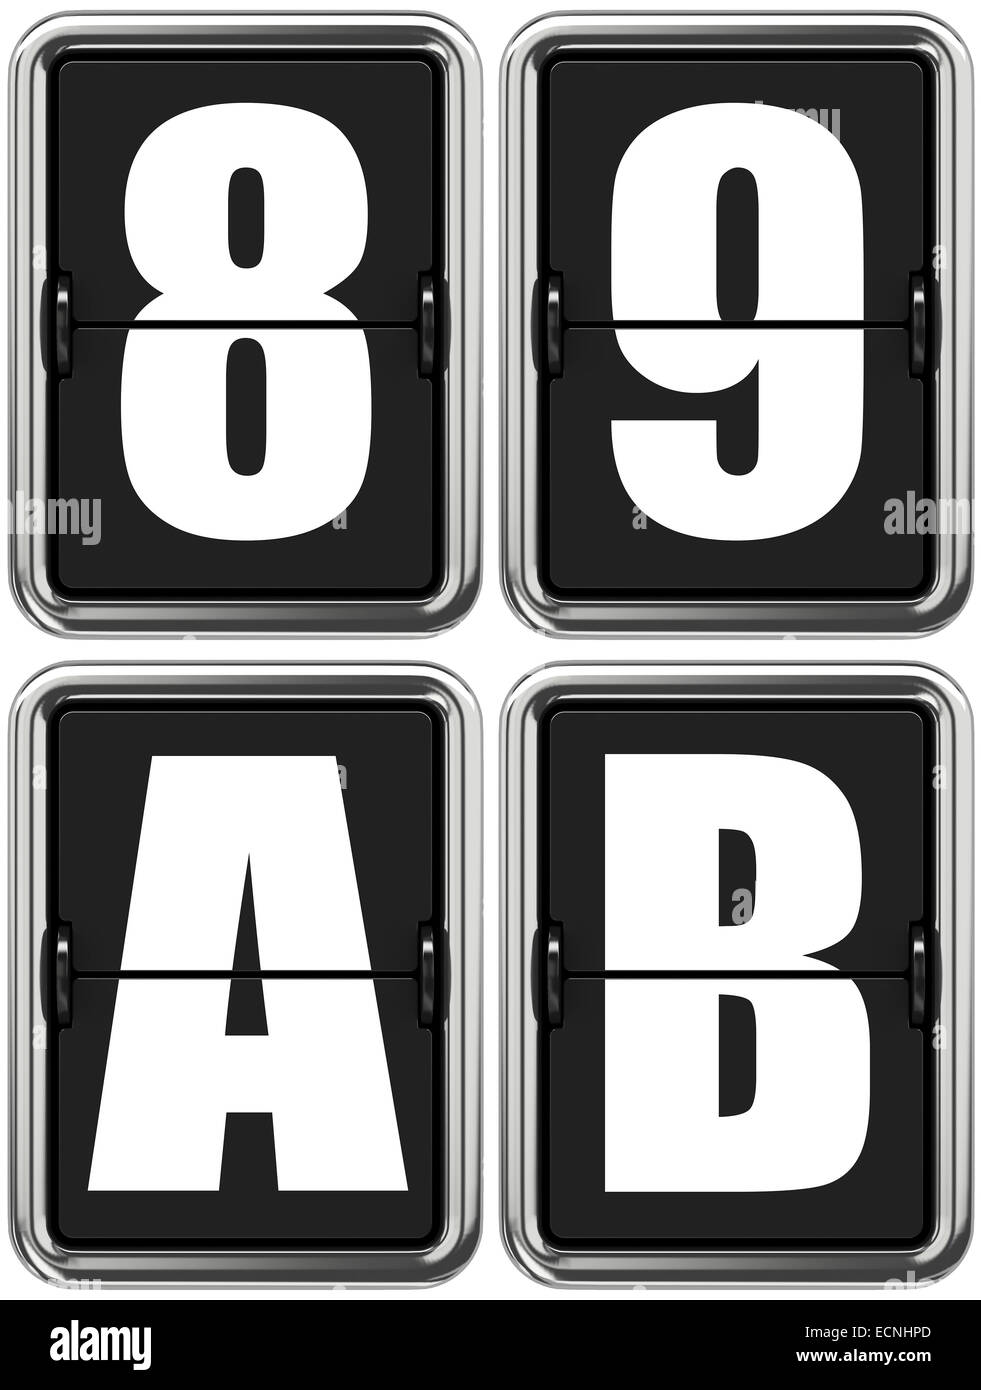 Las letras A, B, y los dígitos 8, 9 en la mecánica de marcador. Foto de stock